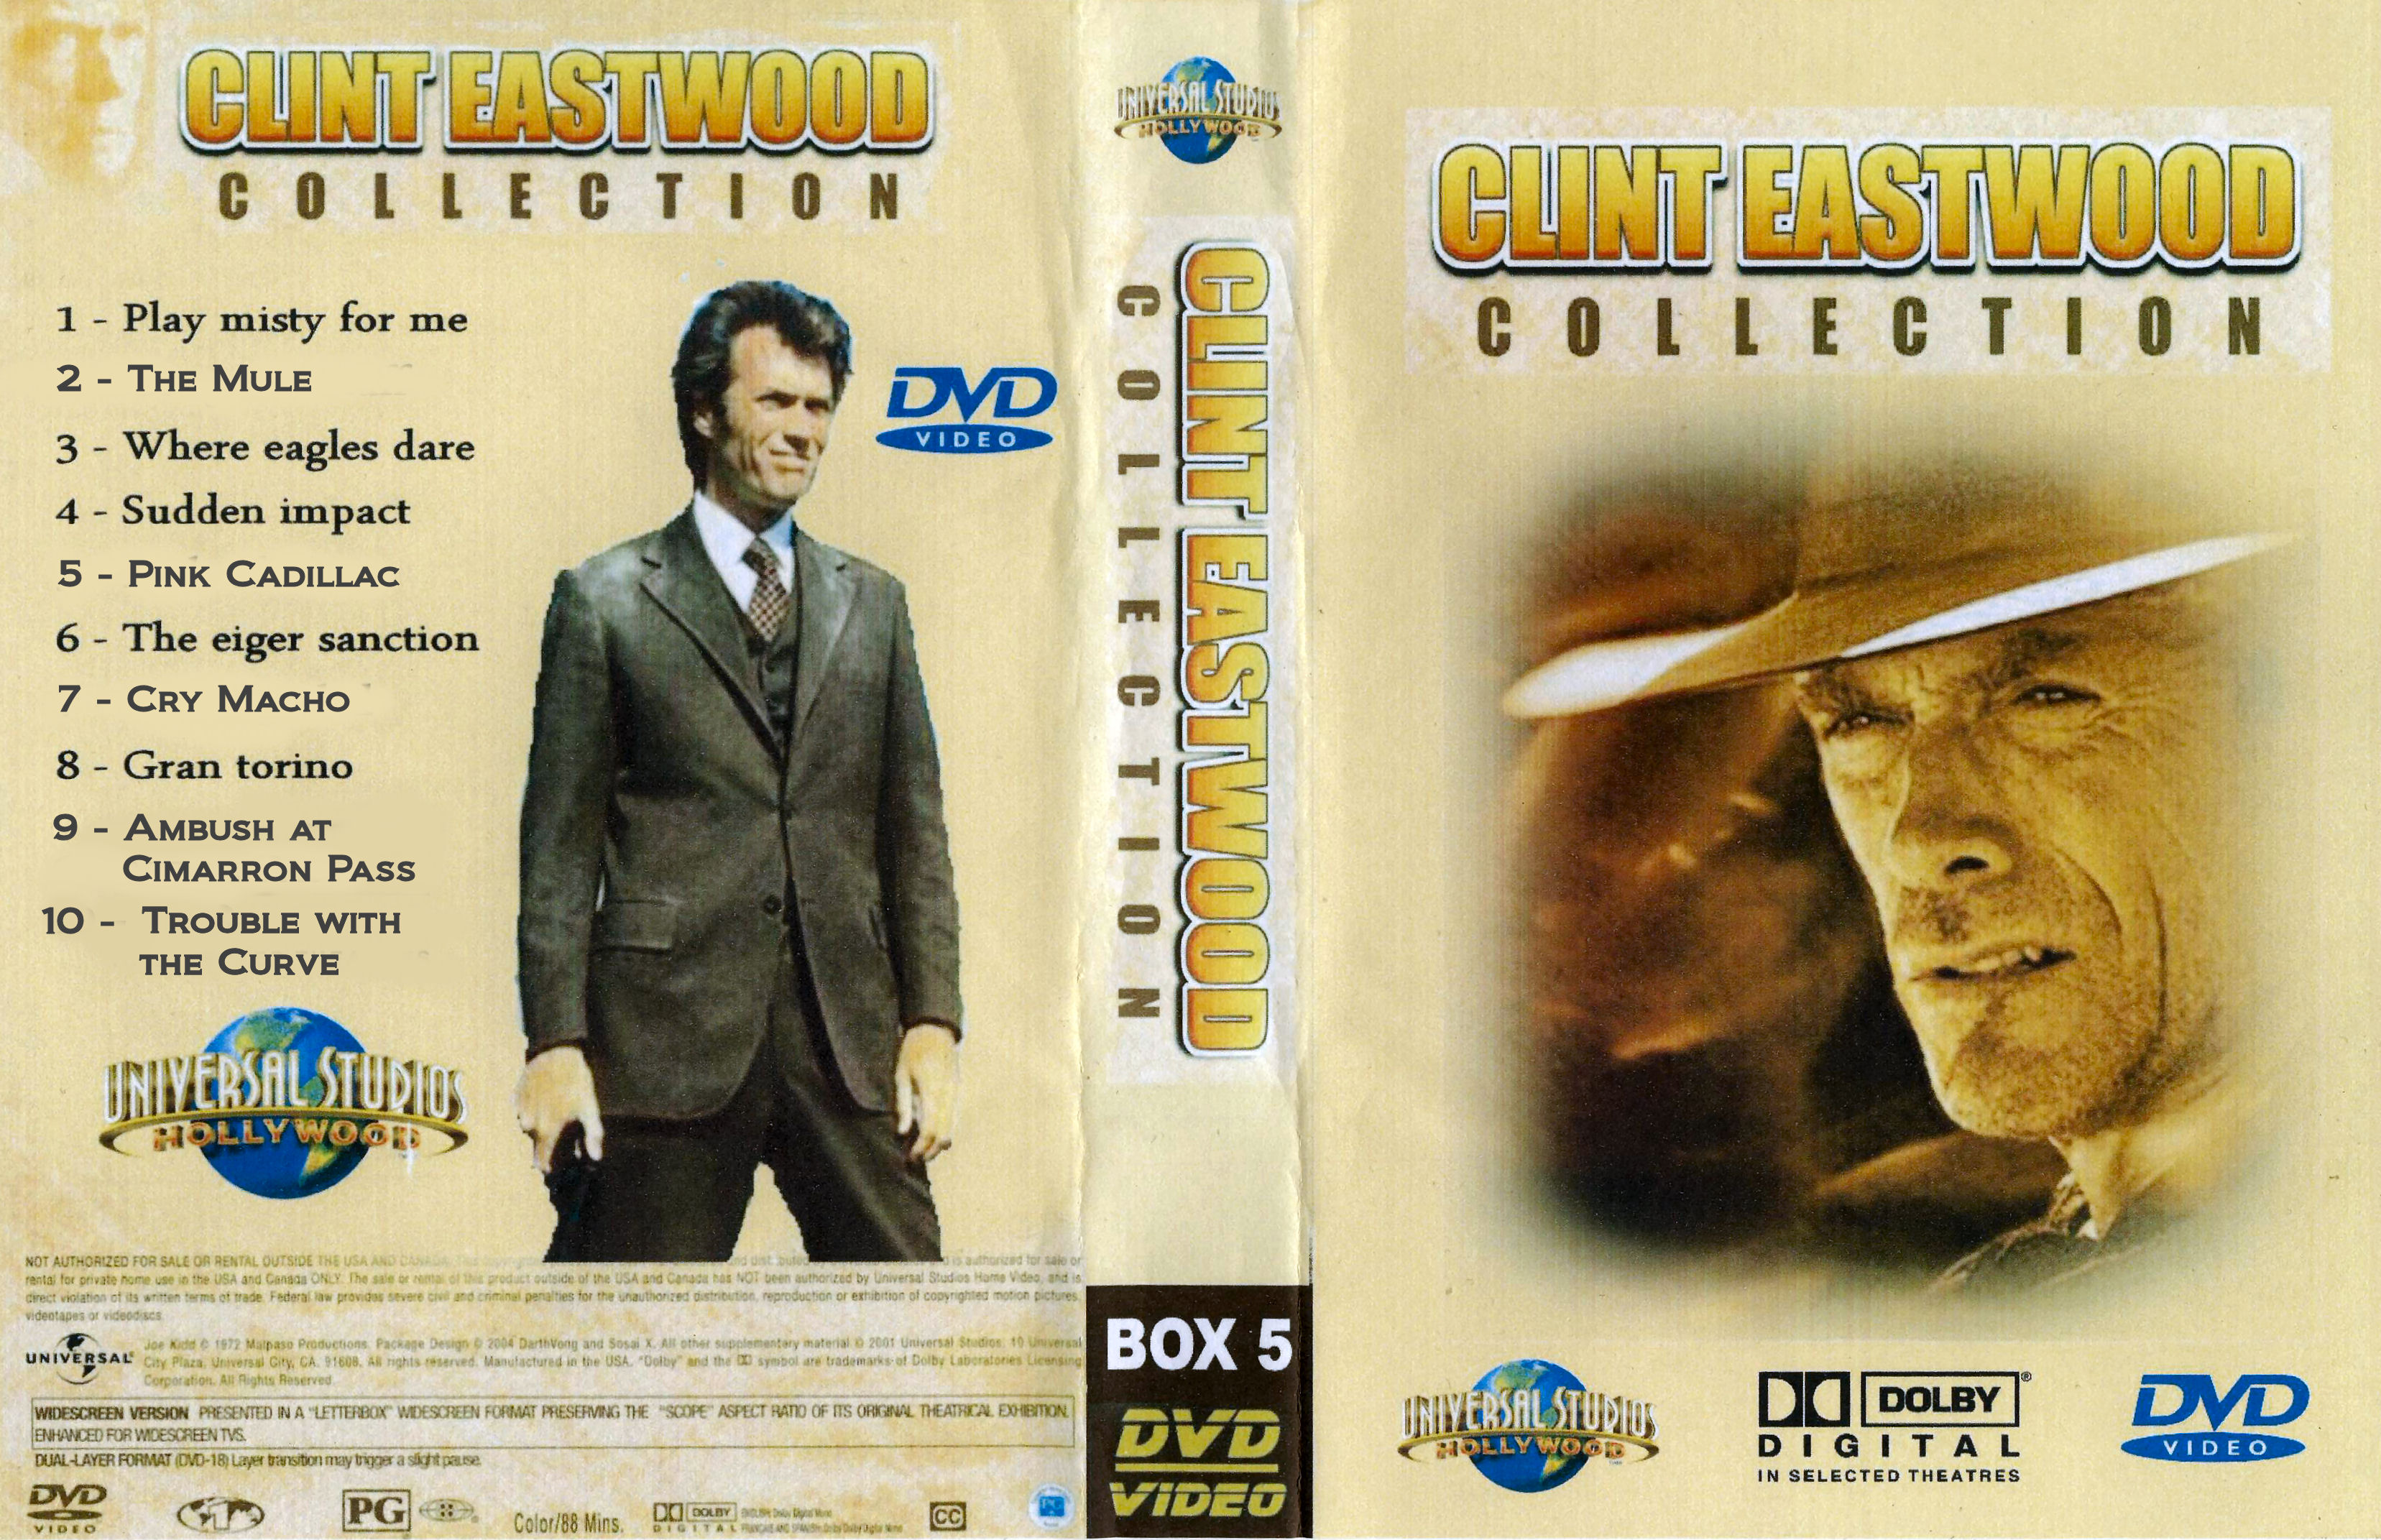 Clint Eastwood Collectie Box 5 DvD 2 van 10